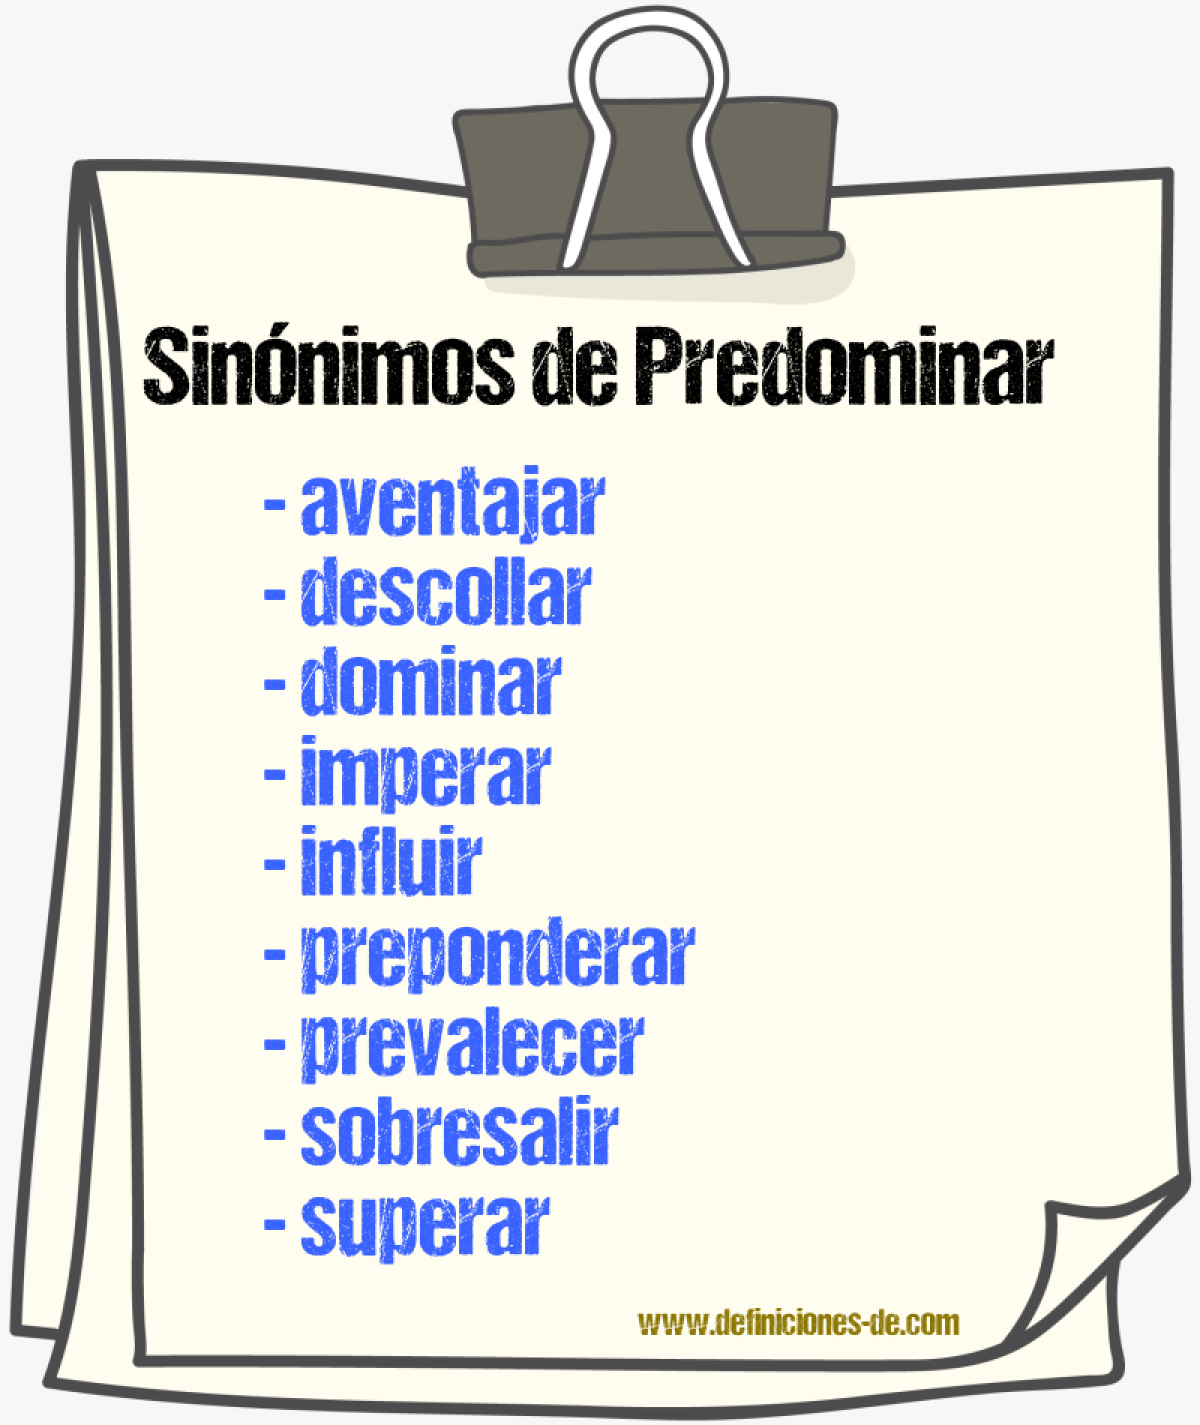 Sinónimos de predominar